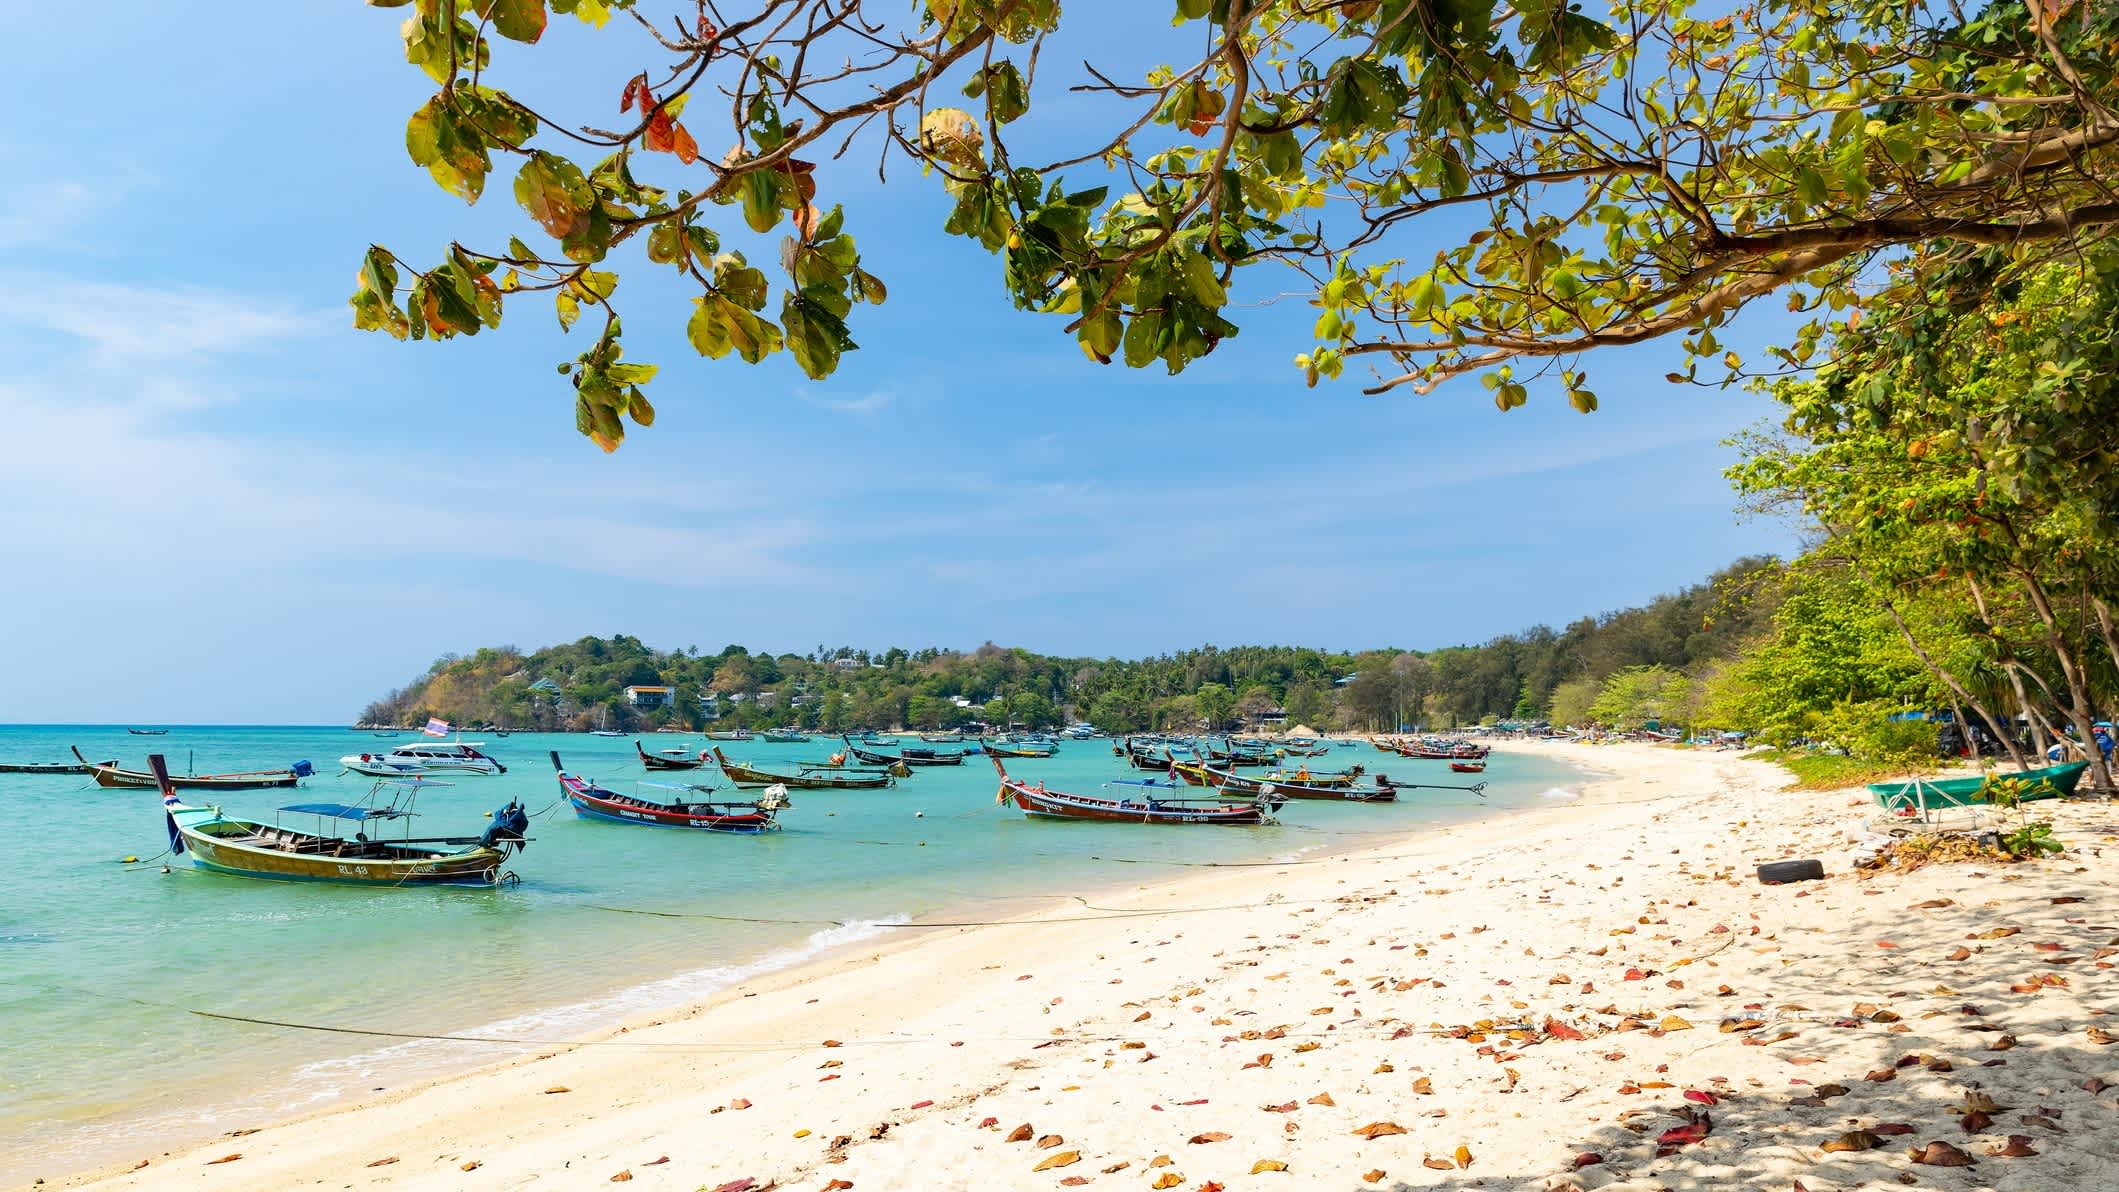 Bateaux traditionnels au bord de la plage de Rawai, Phuket en Thaïlande